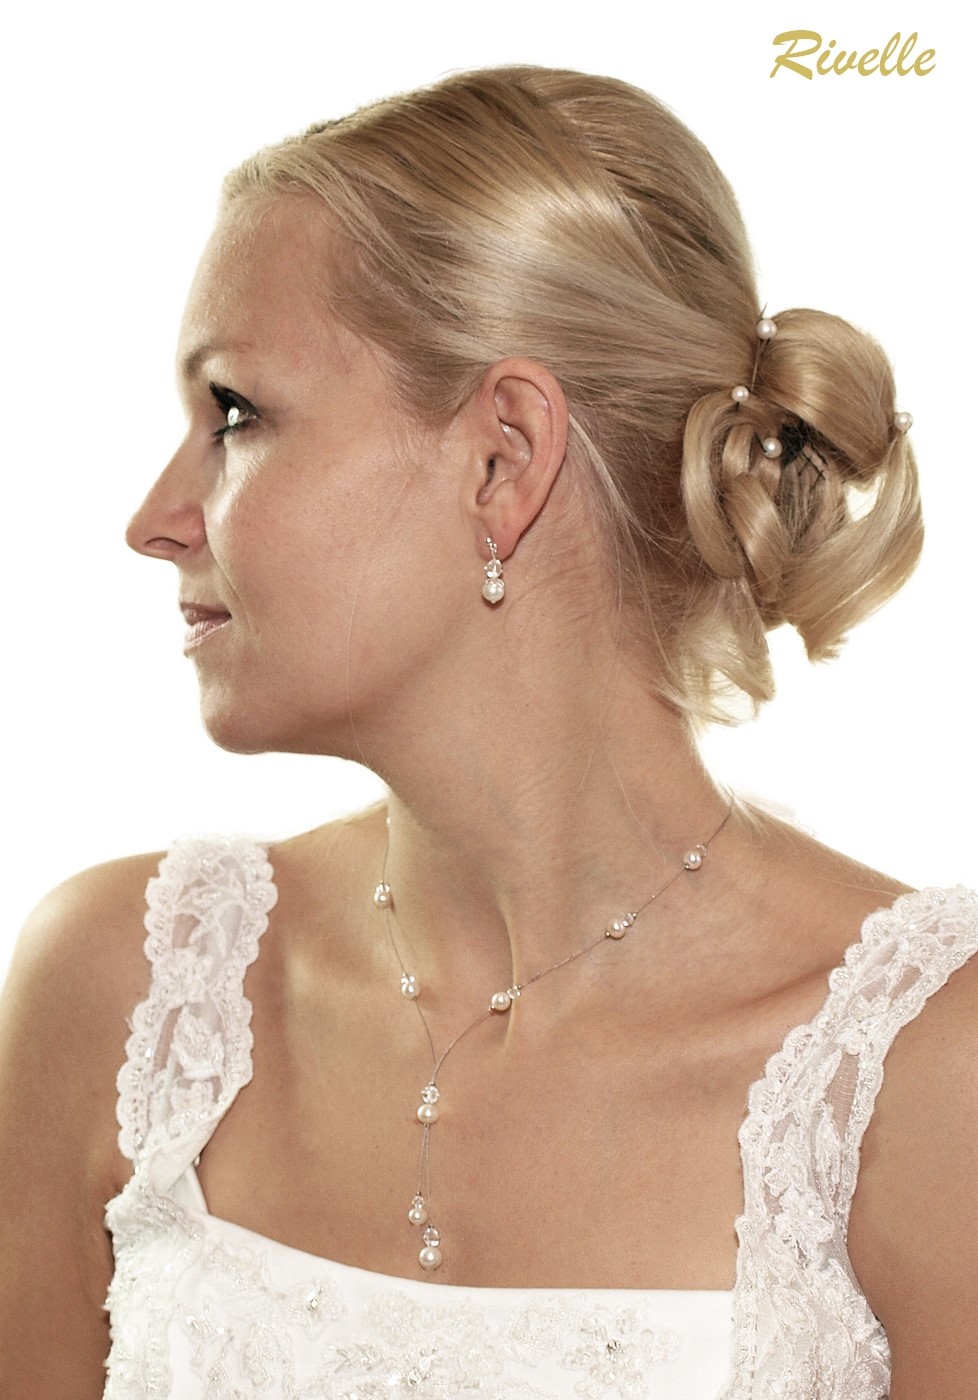 Set Perlenkette Ohrringe Kette Bettelkette Halskette Perlen Schmuckset Weiß 